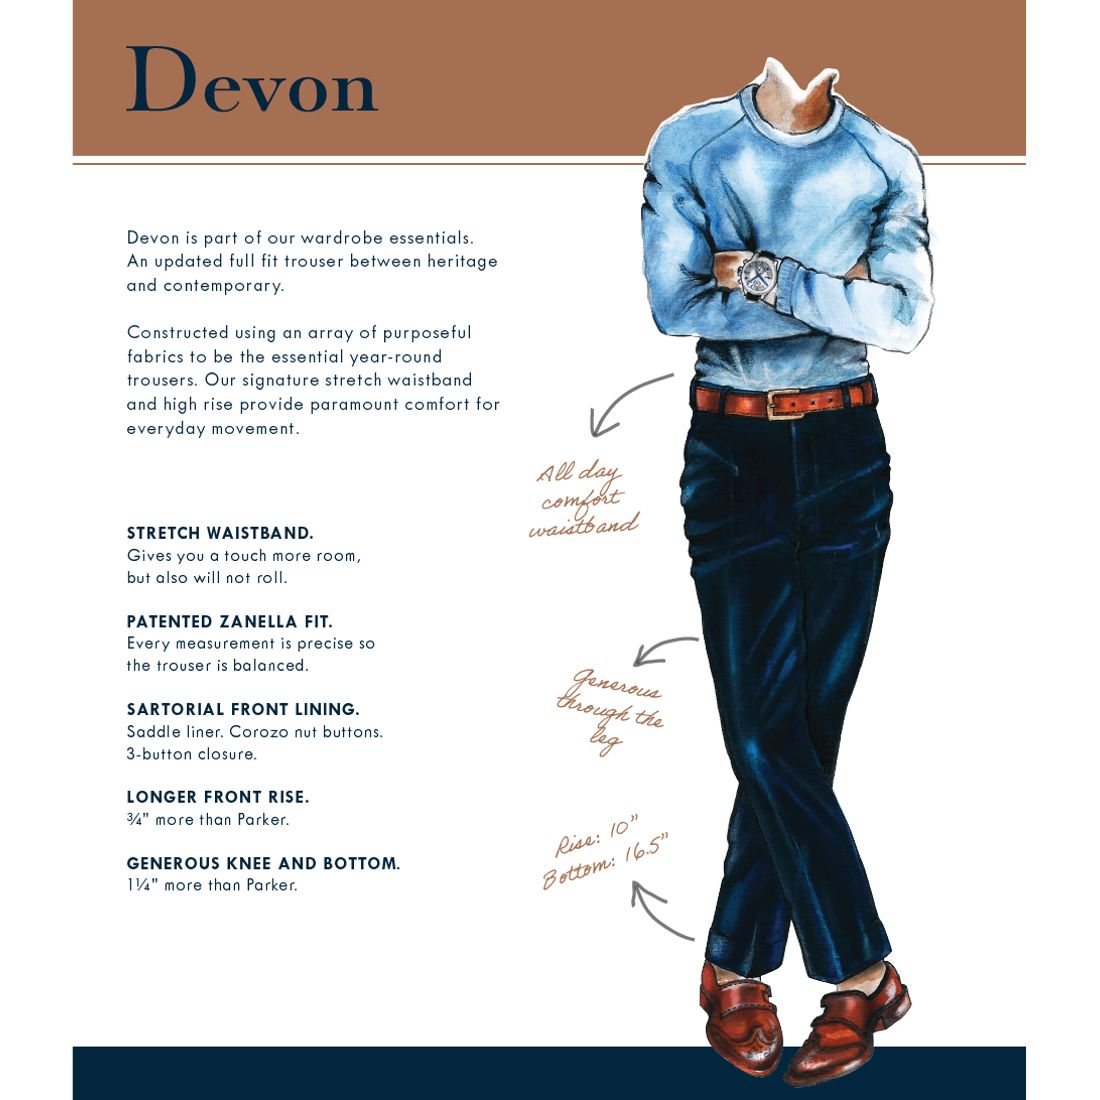 Devon Flat Front Super 120s Wool Serge Trouser in Charcoal (Modern Full Fit) by Zanella